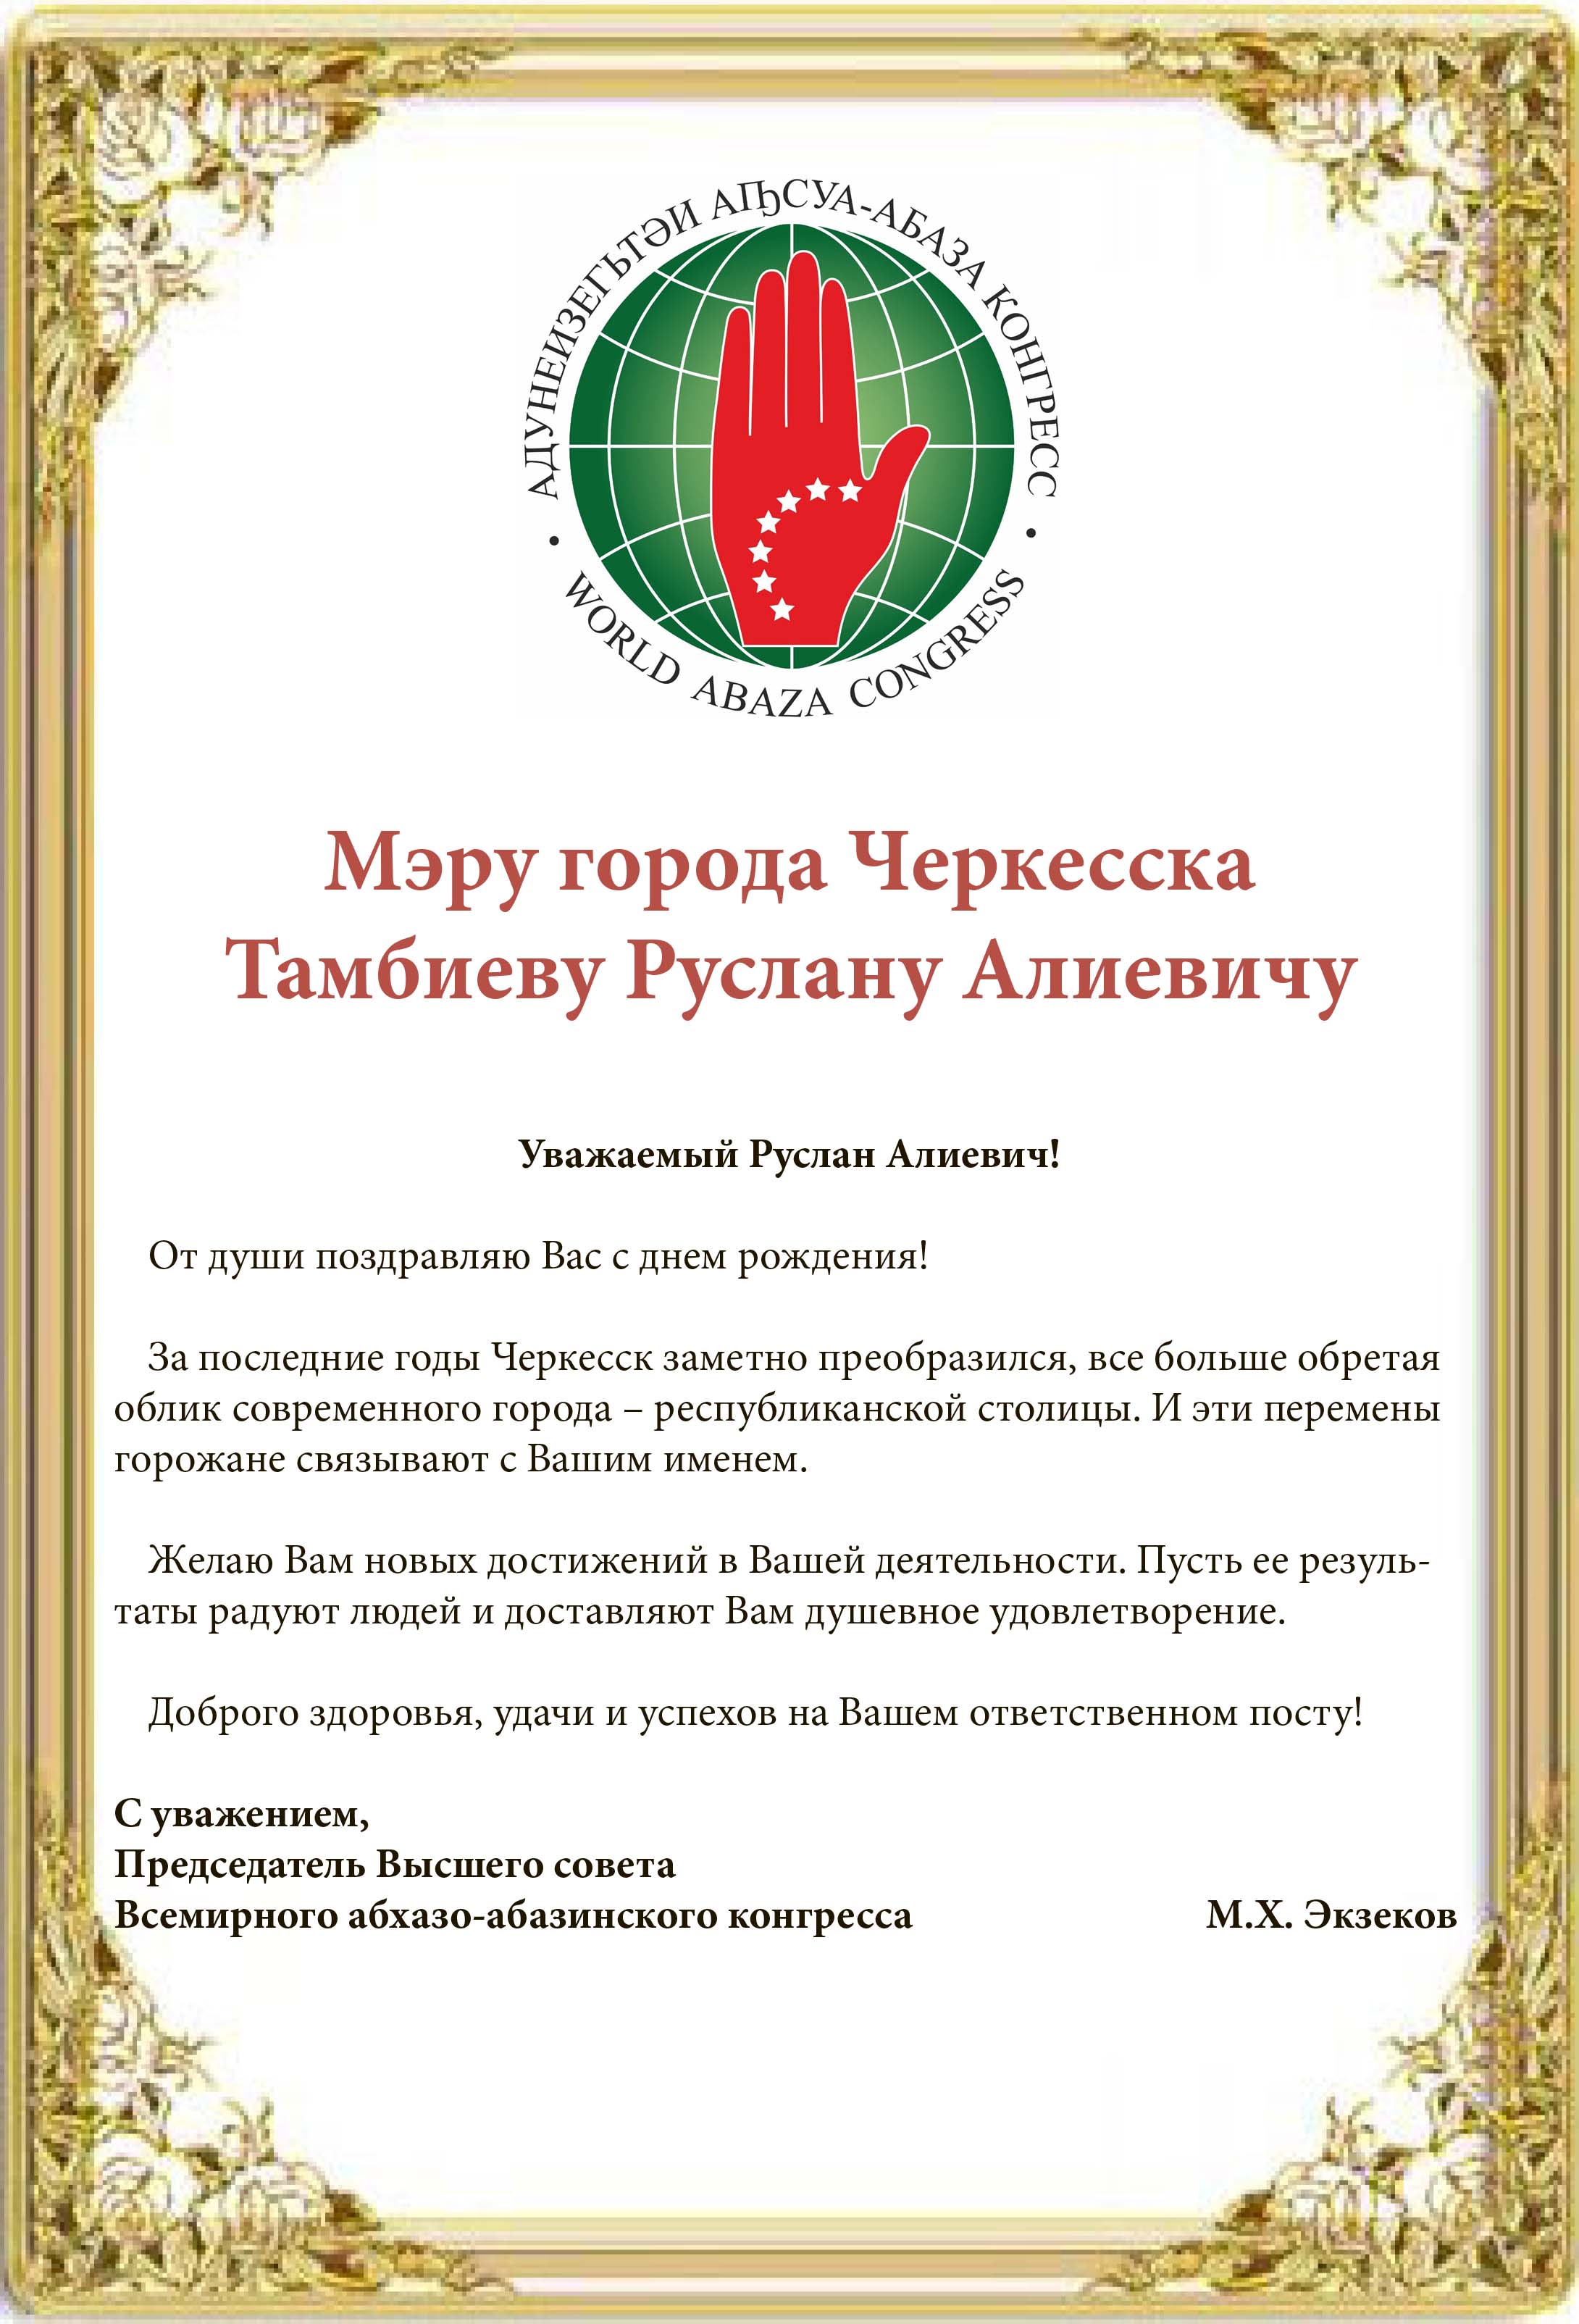 Мусса Экзеков поздравил Руслана Тамбиева с днем рождения